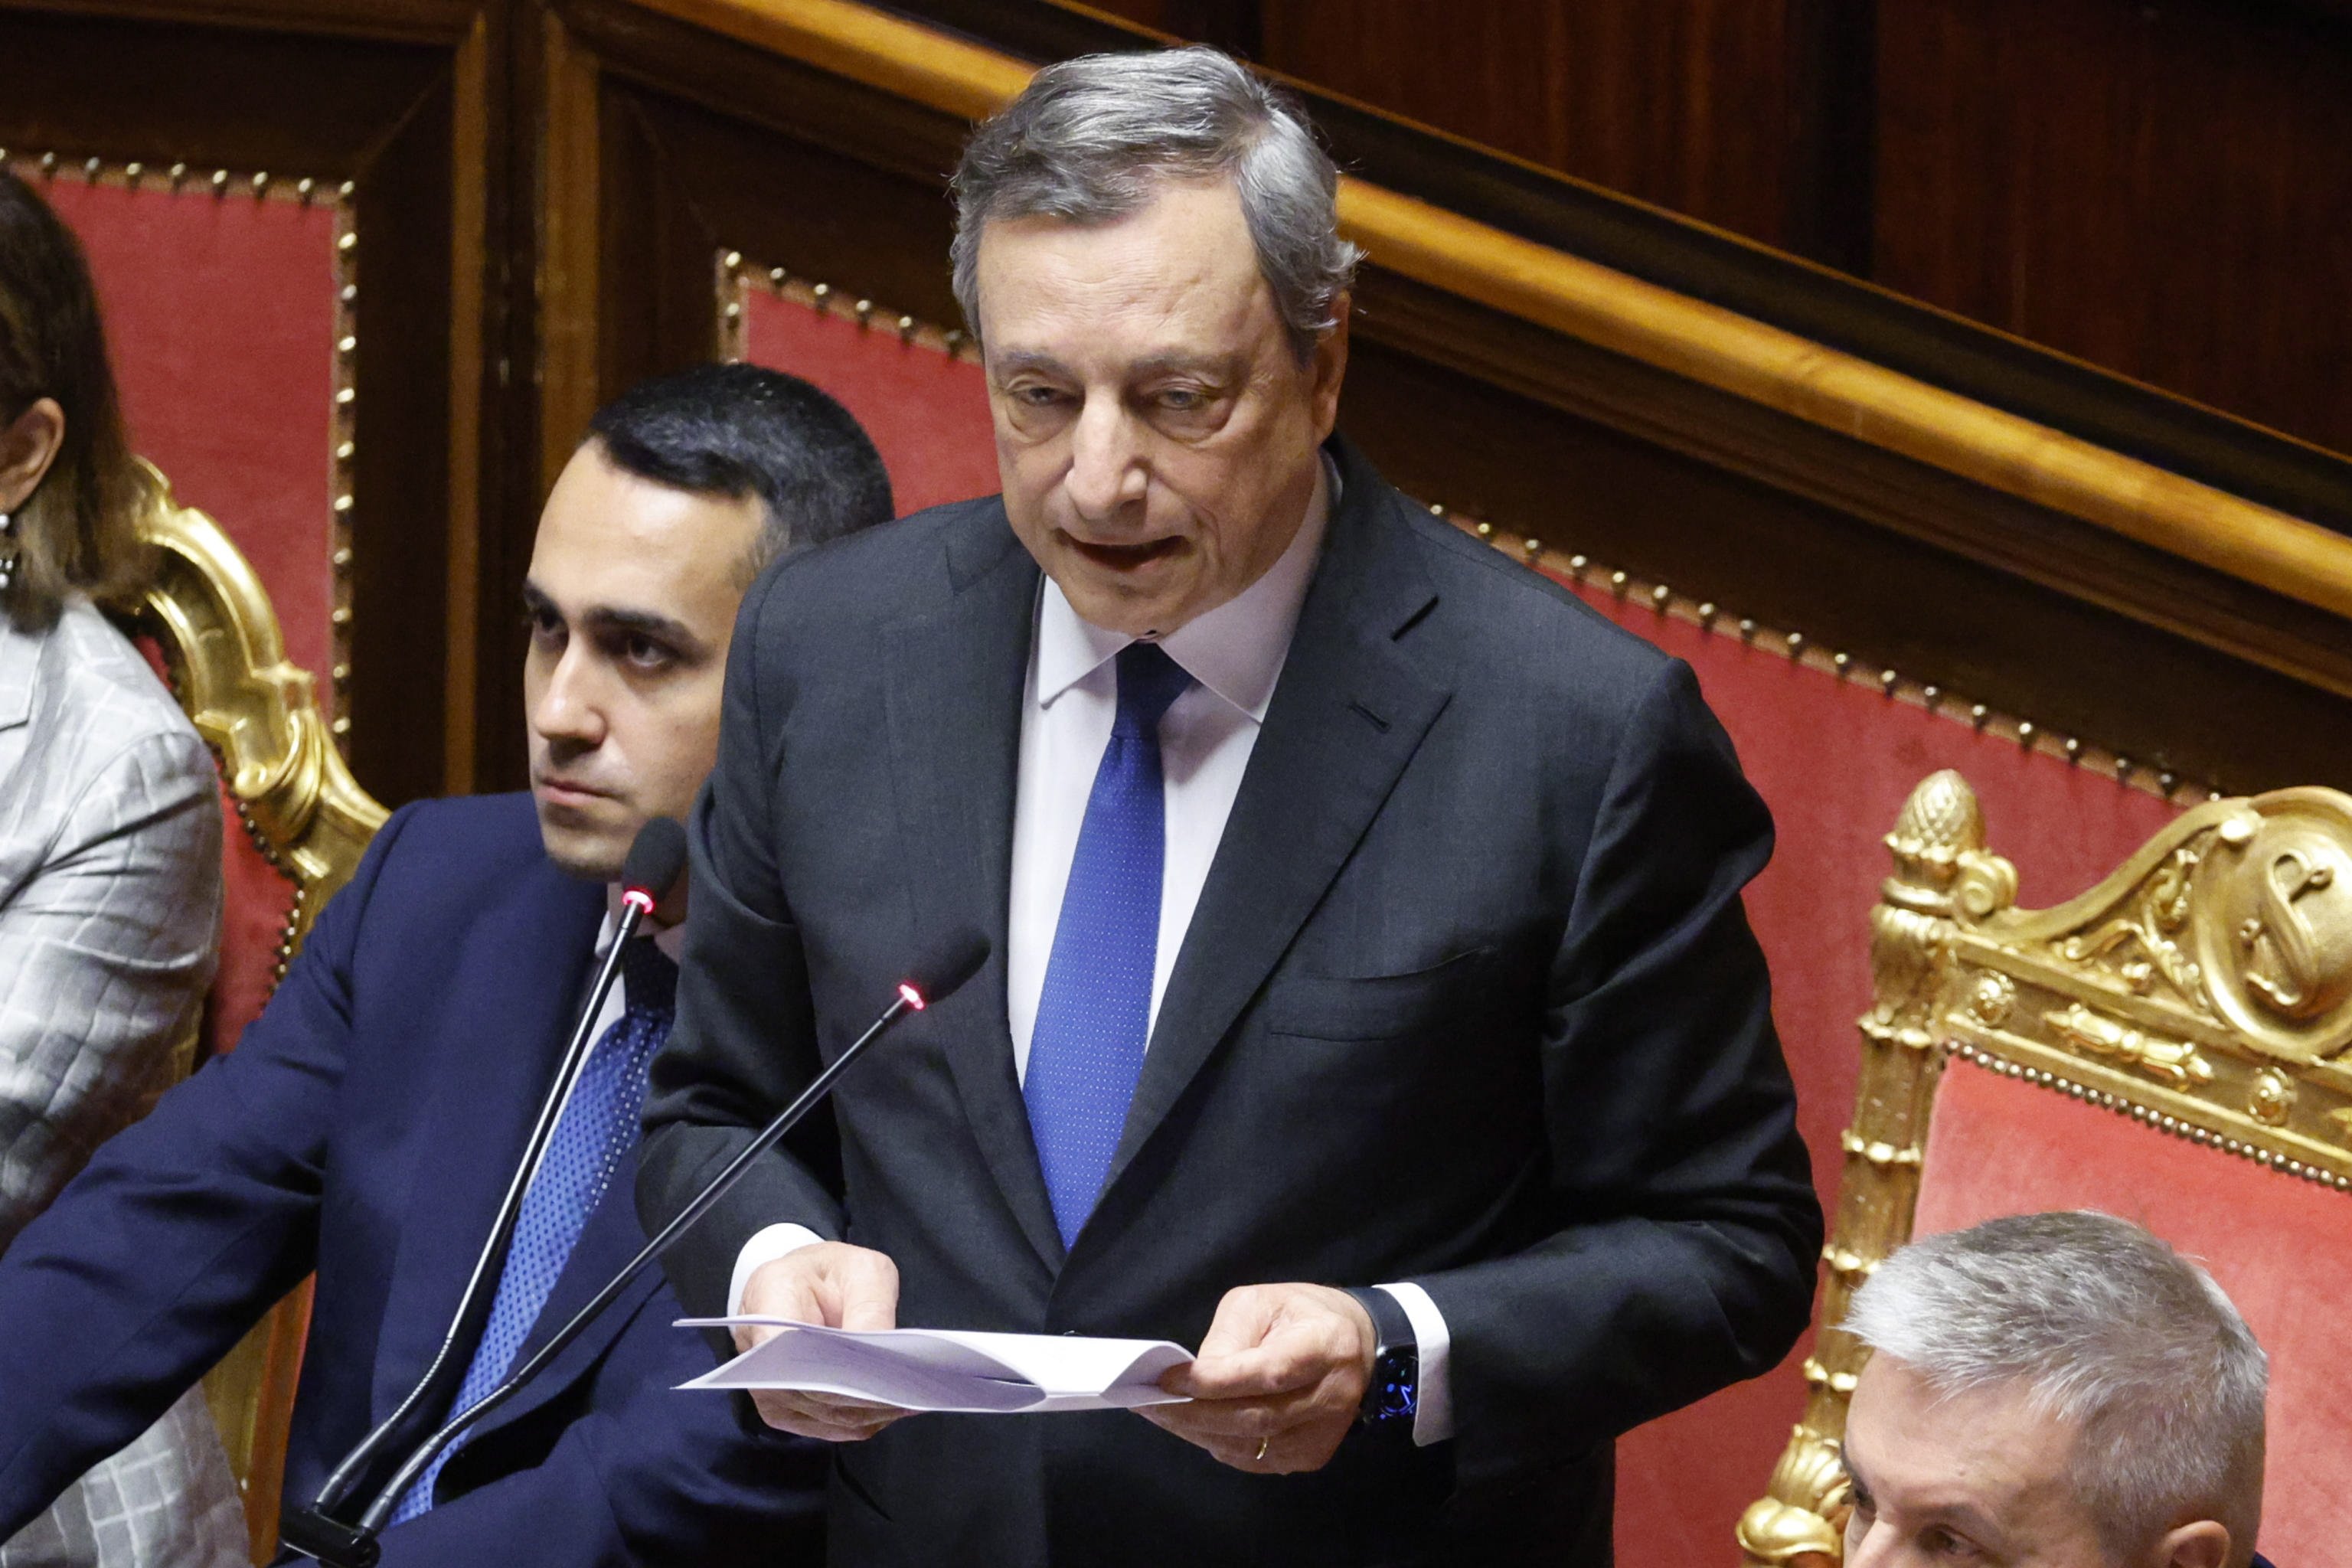 Mario Draghi reconsidera su dimisión a la espera de que los partidos acepten su programa